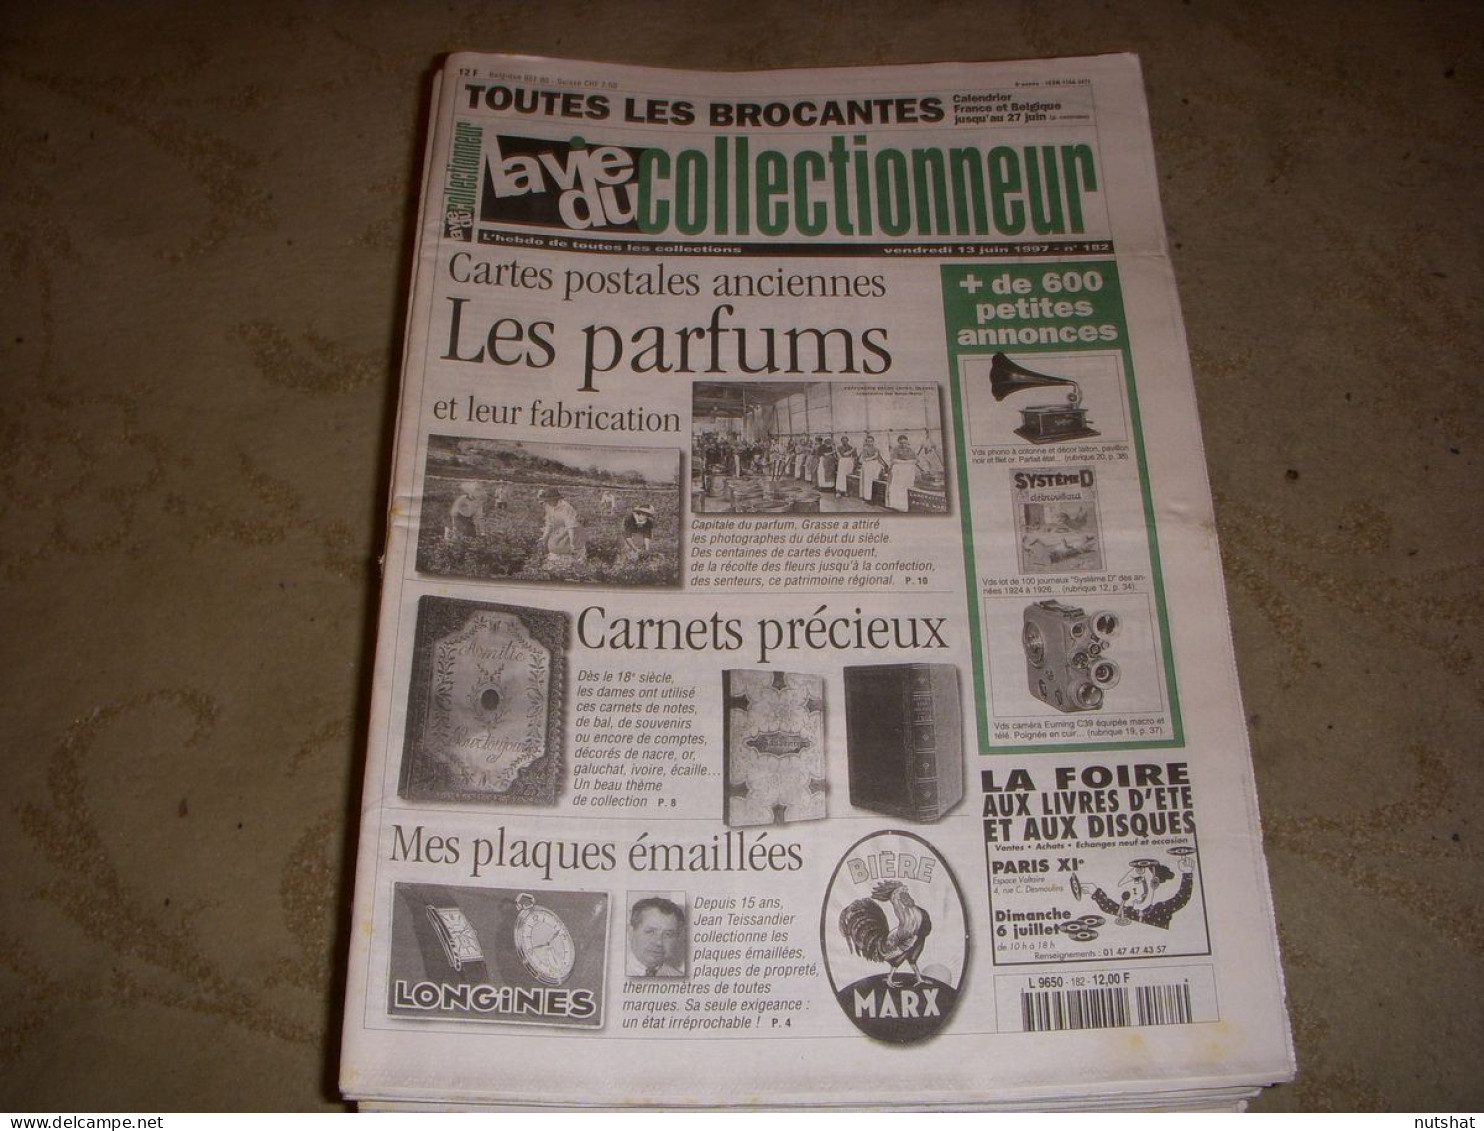 LVC VIE Du COLLECTIONNEUR 182 13.06.1997 PARFUM CARNET PRECIEUX PLAQUE EMAILL  - Verzamelaars